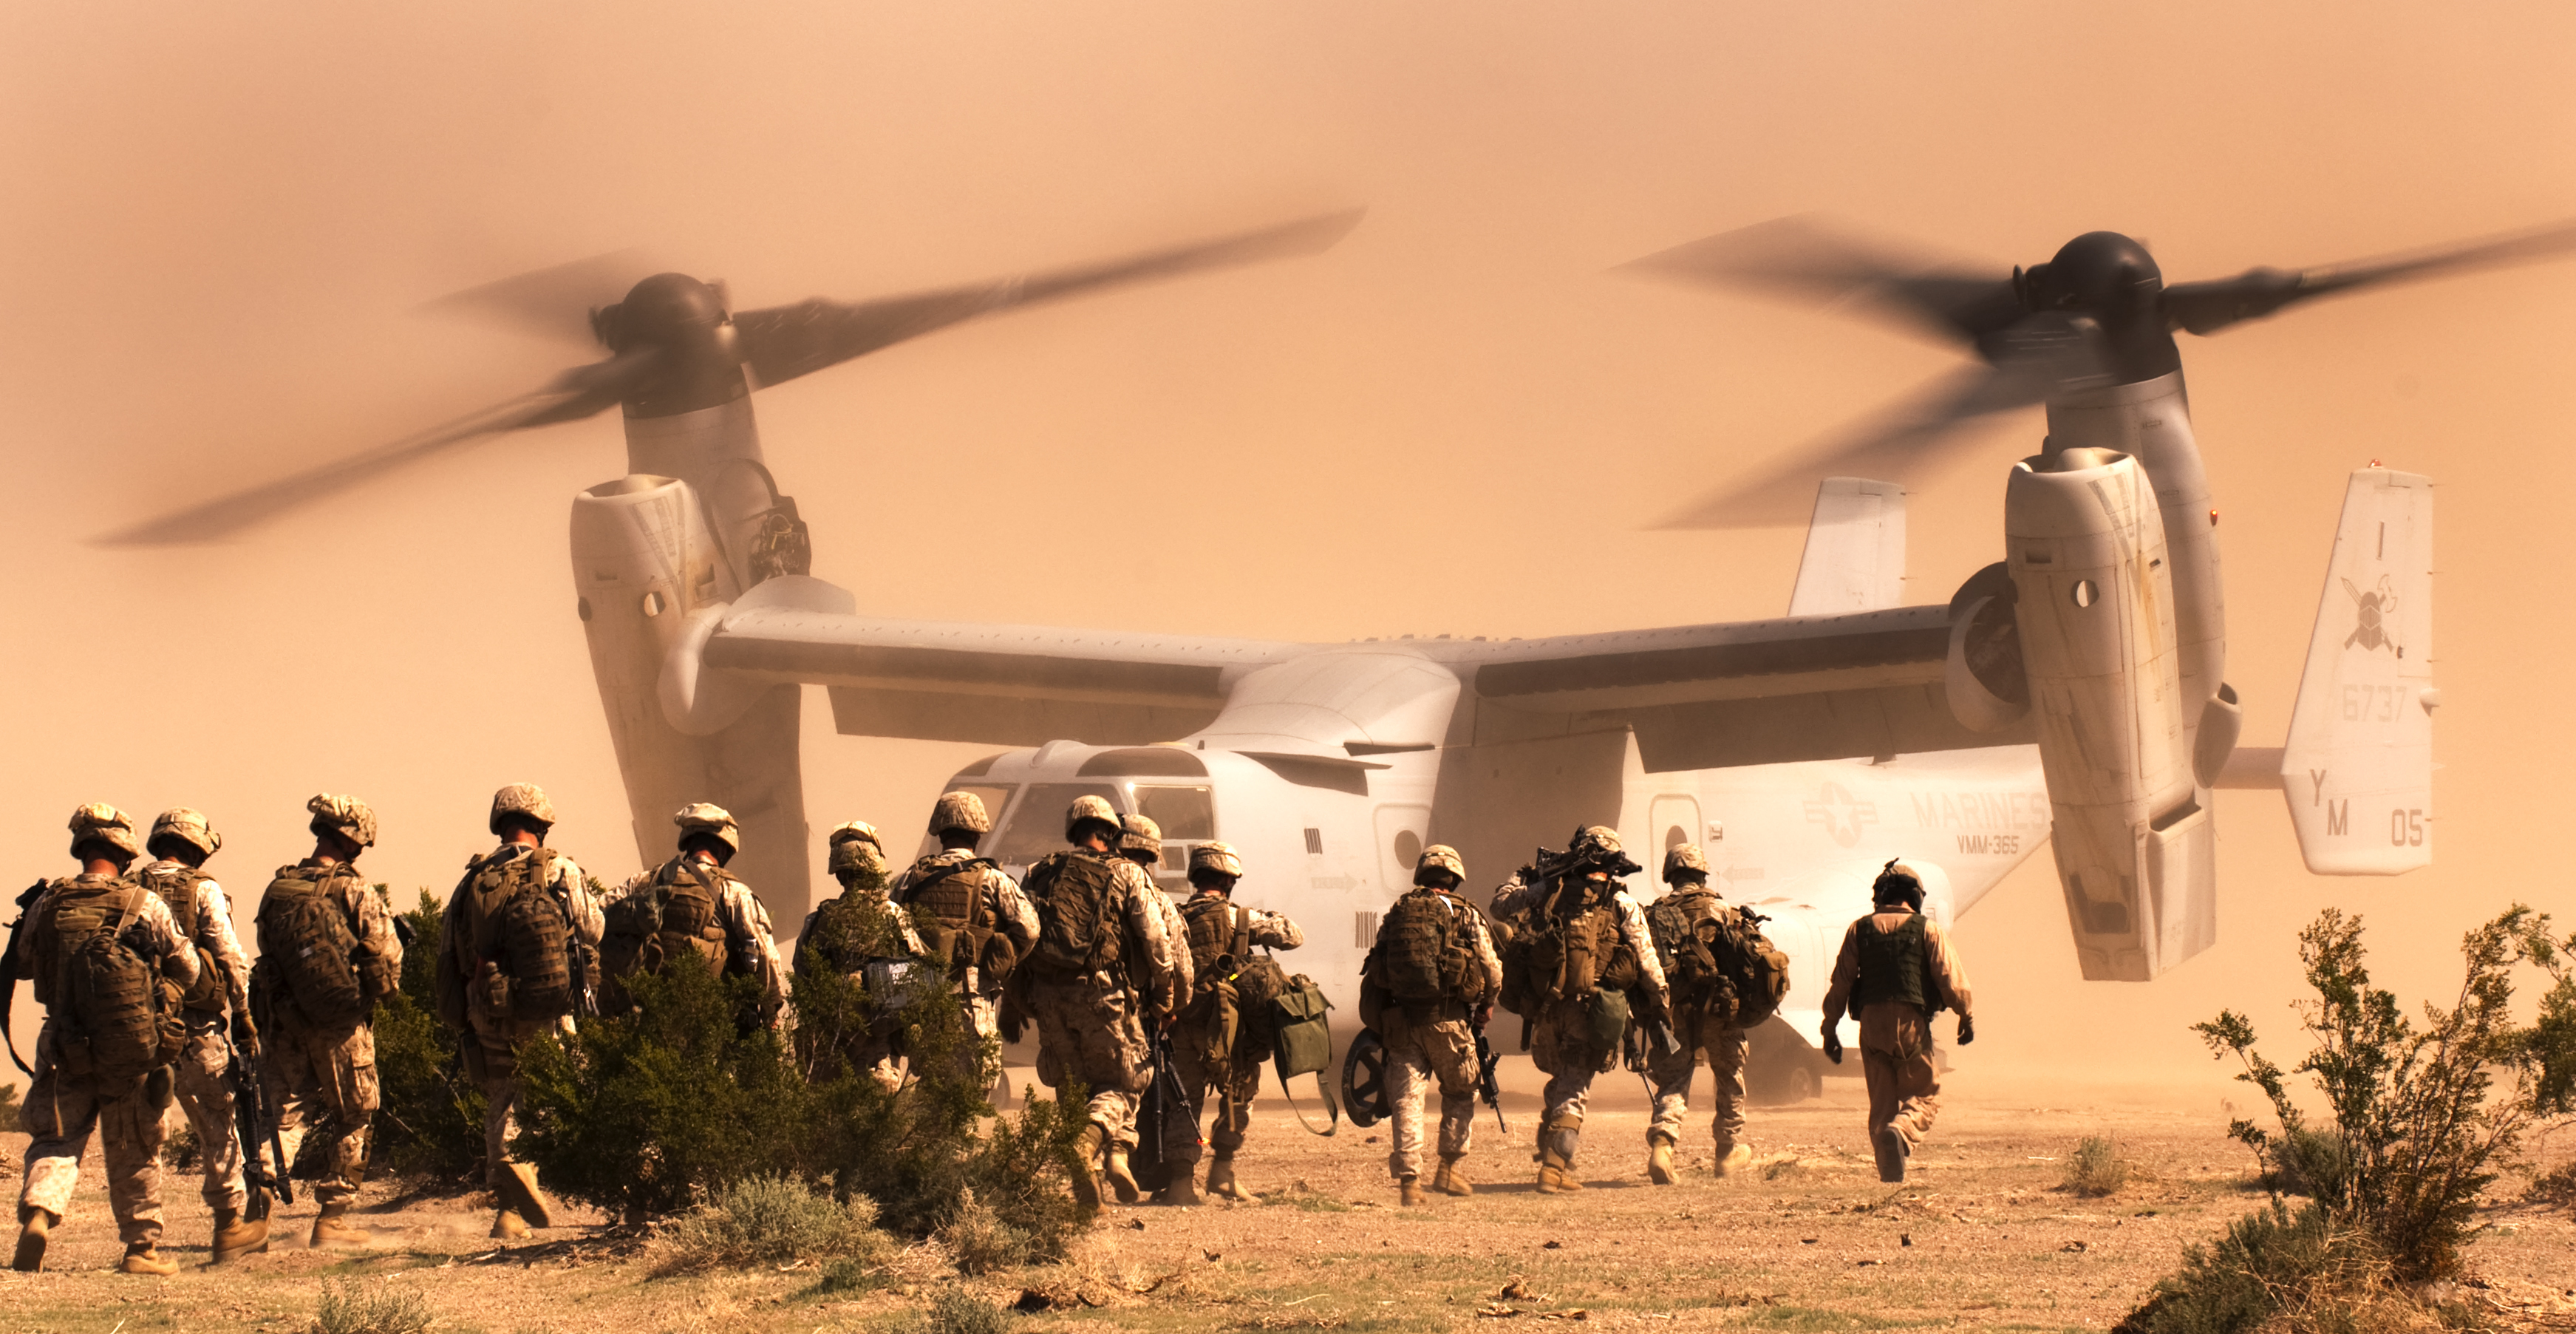 Wallpaper Px A Bell Desert Marines Military